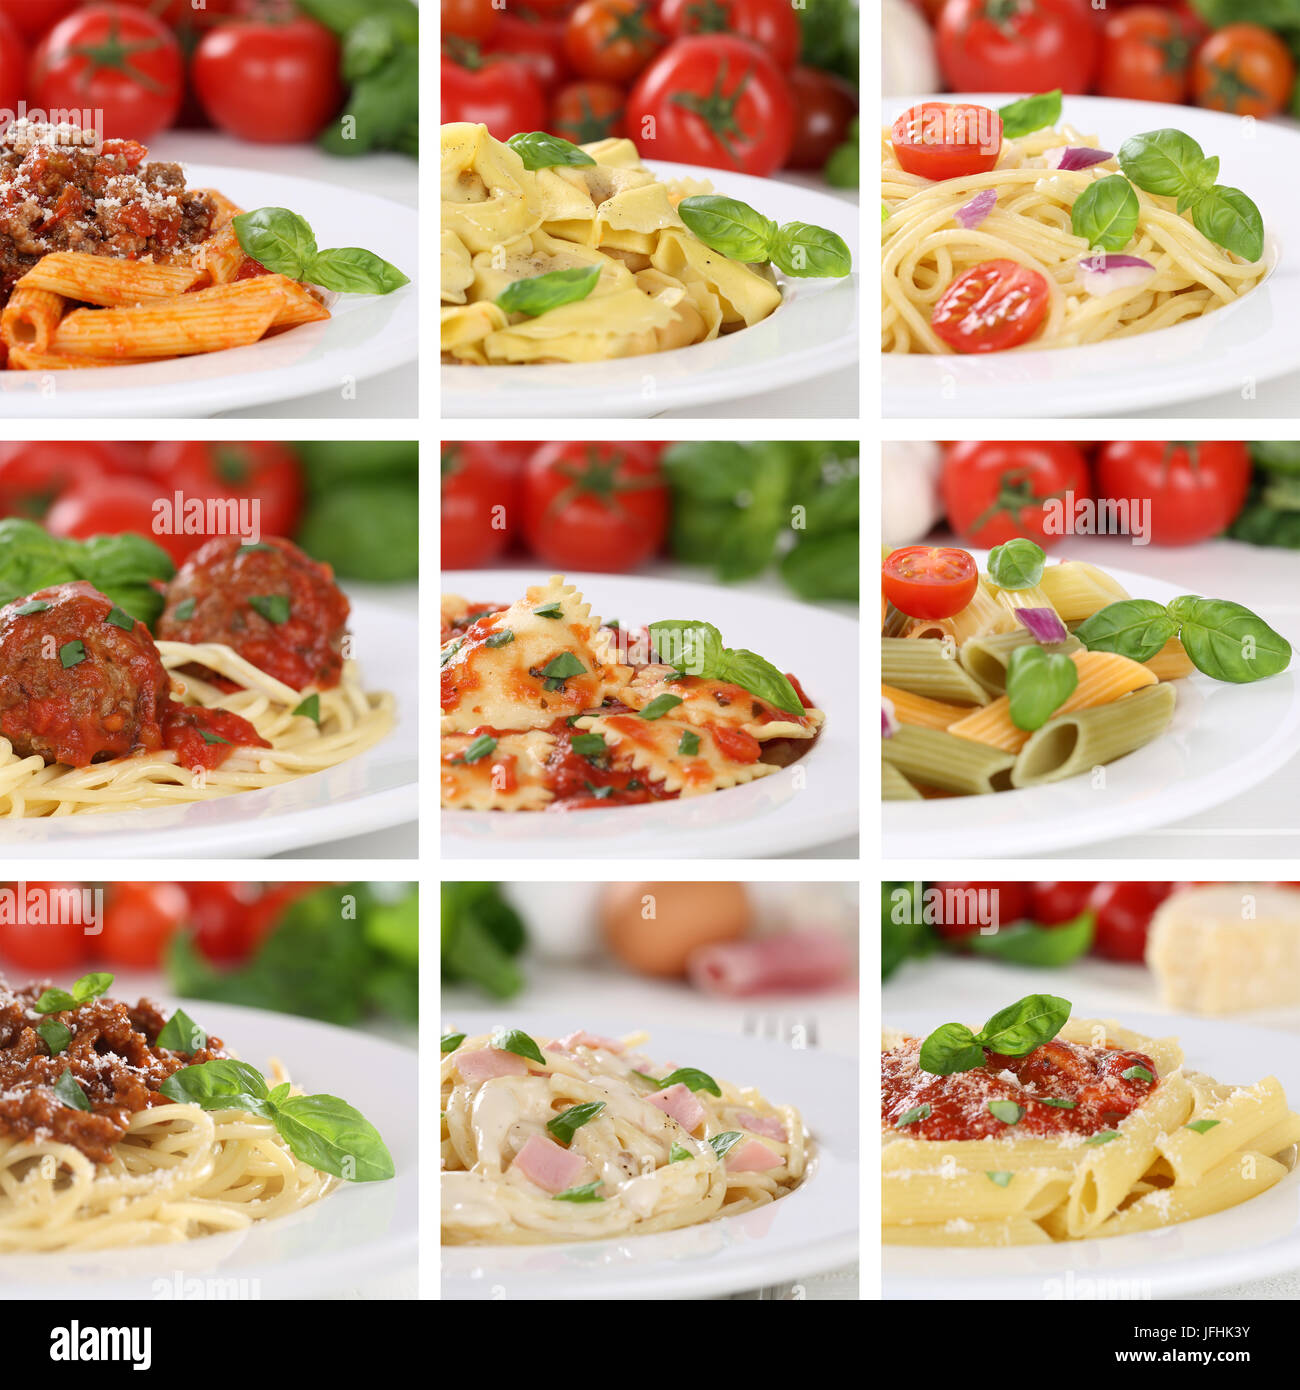 Italienisches Essen Collage von Spaghetti Food Pasta Nudeln Gerichte mit Tomaten Stock Photo